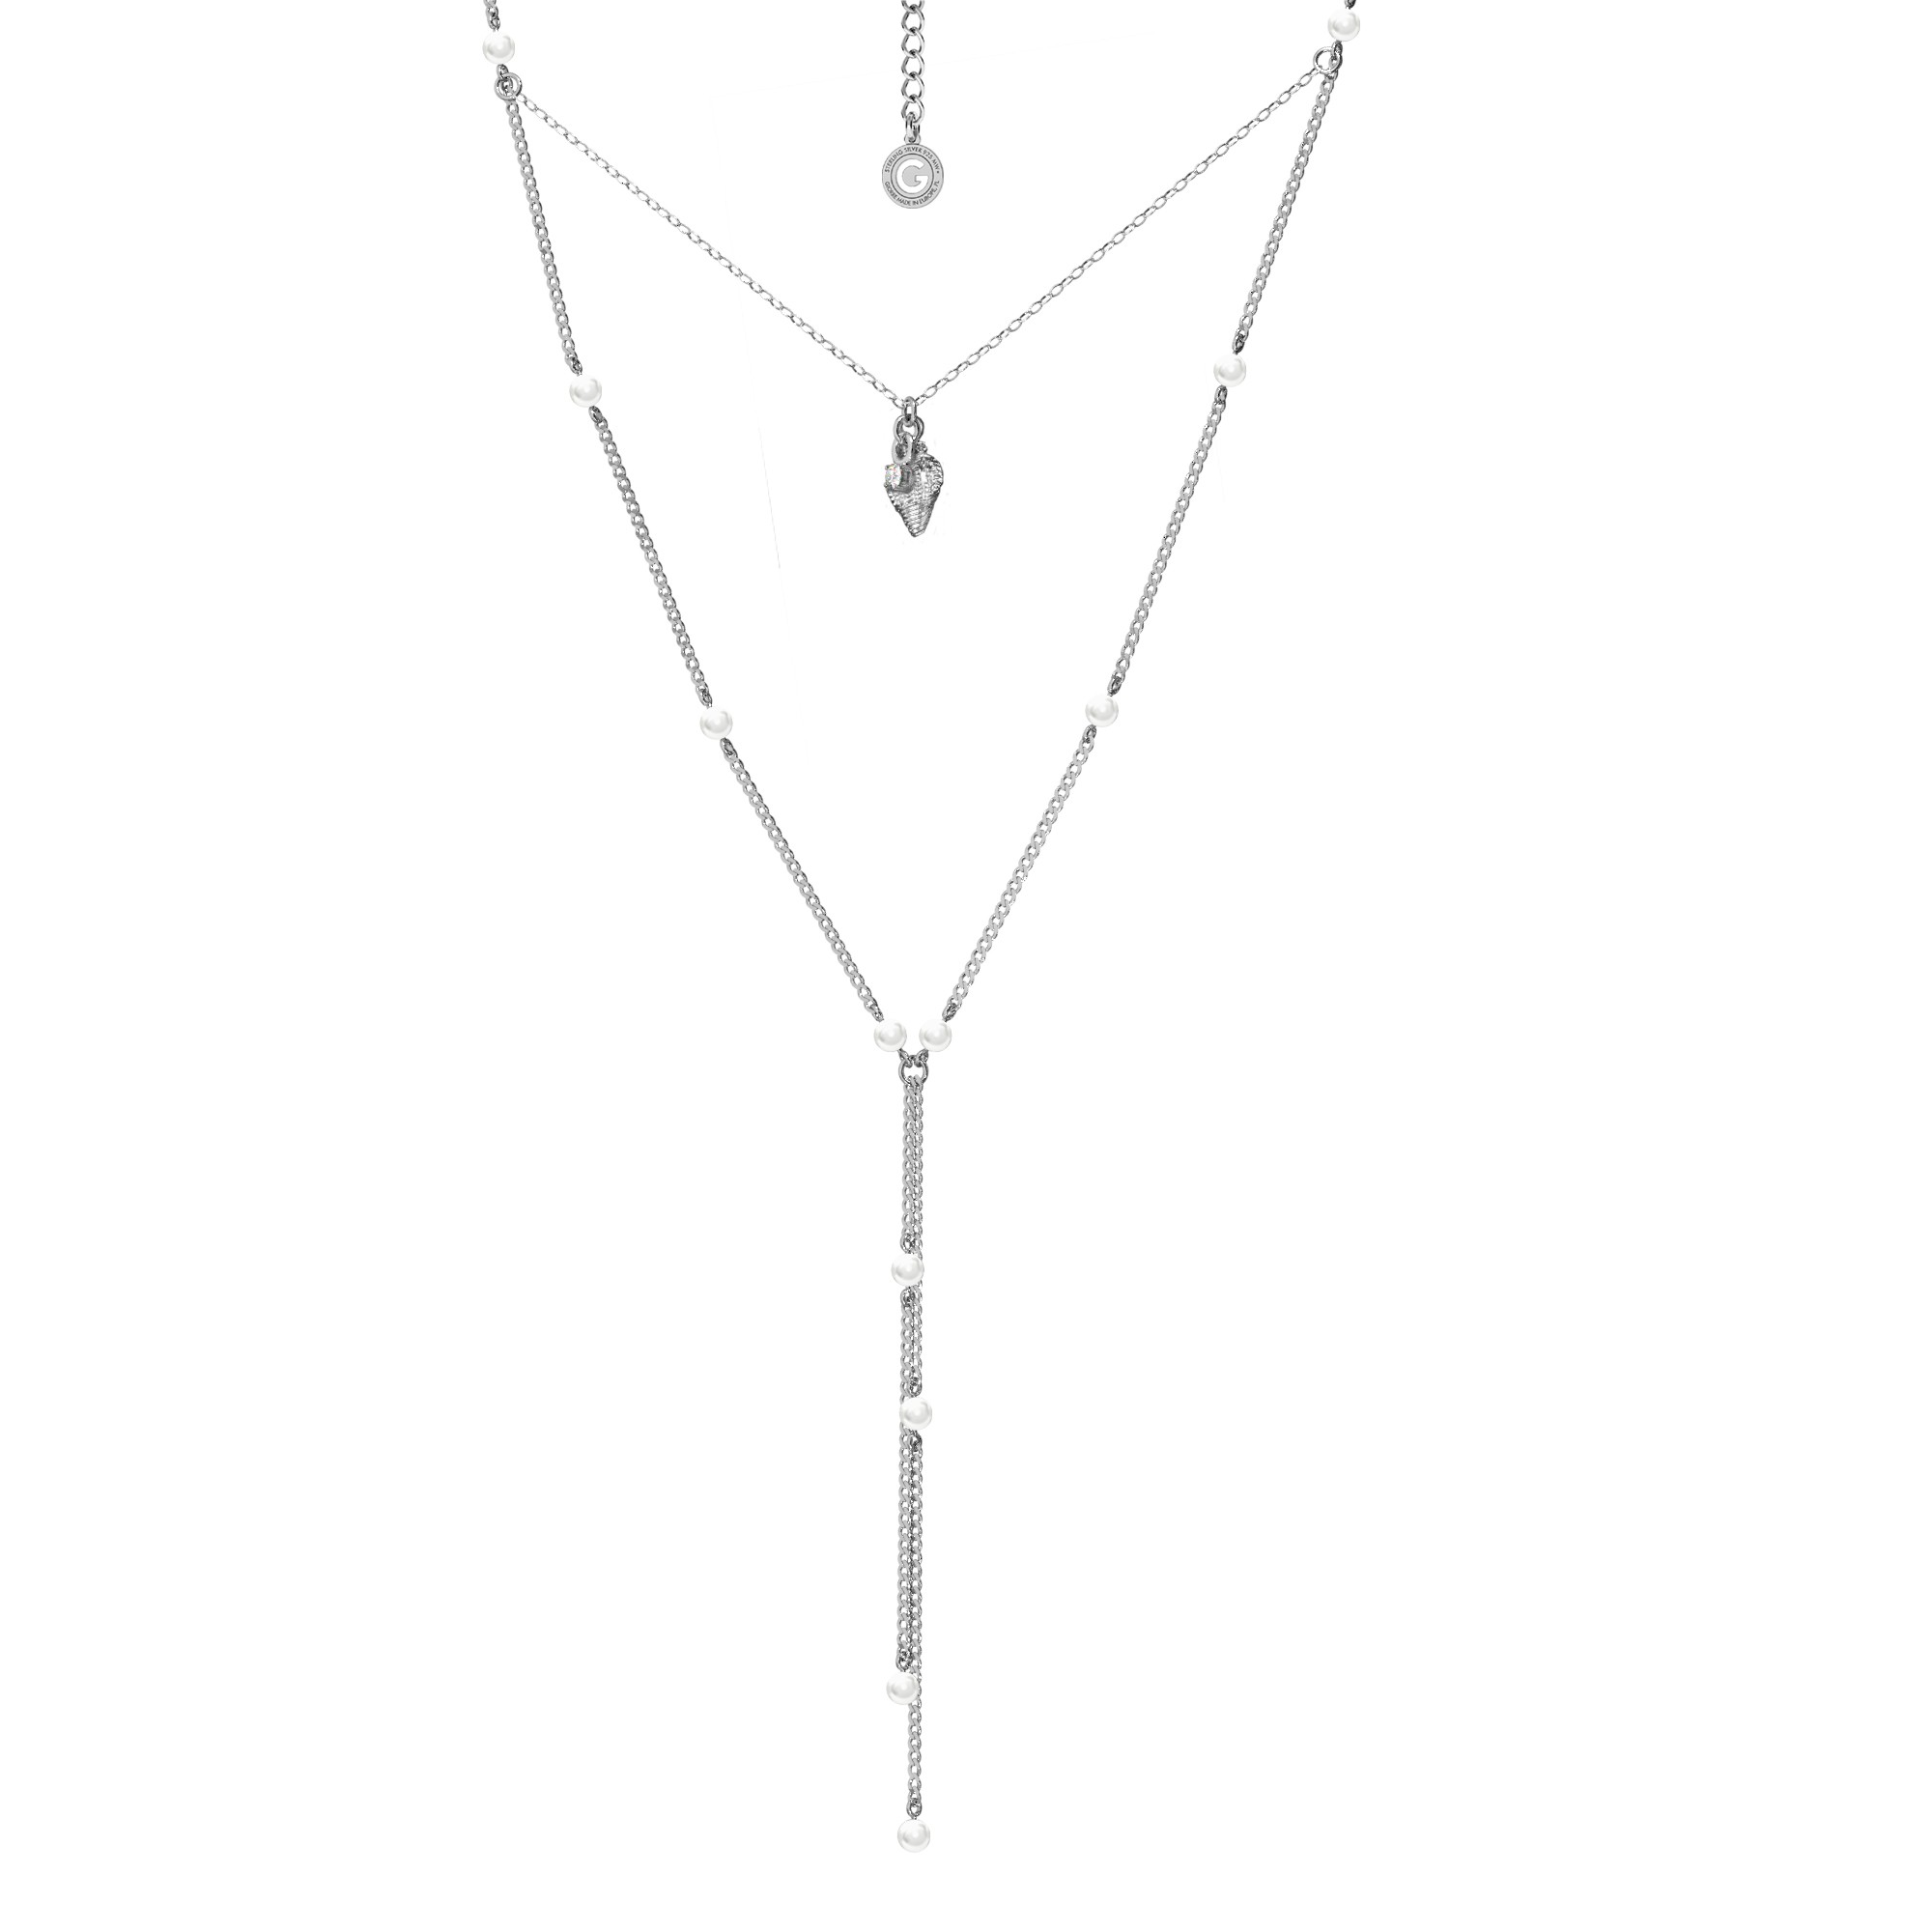 Perlenhalsband mit Spiegel sterling silber 925